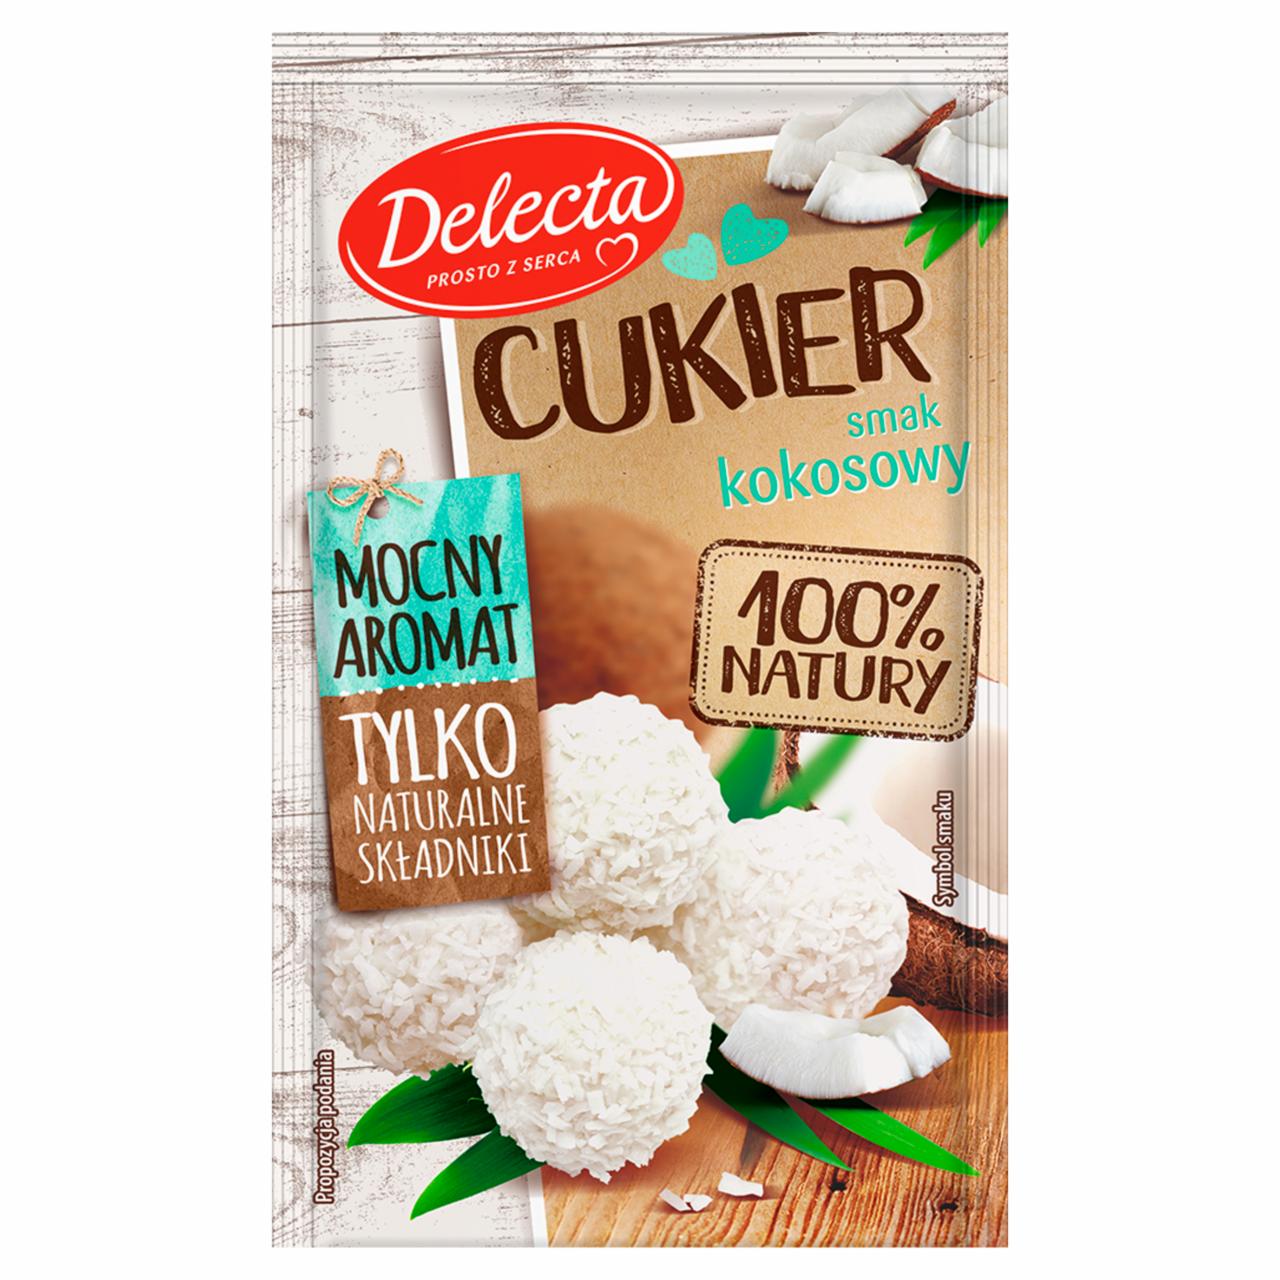 Zdjęcia - Delecta Cukier smak kokosowy premium 15 g